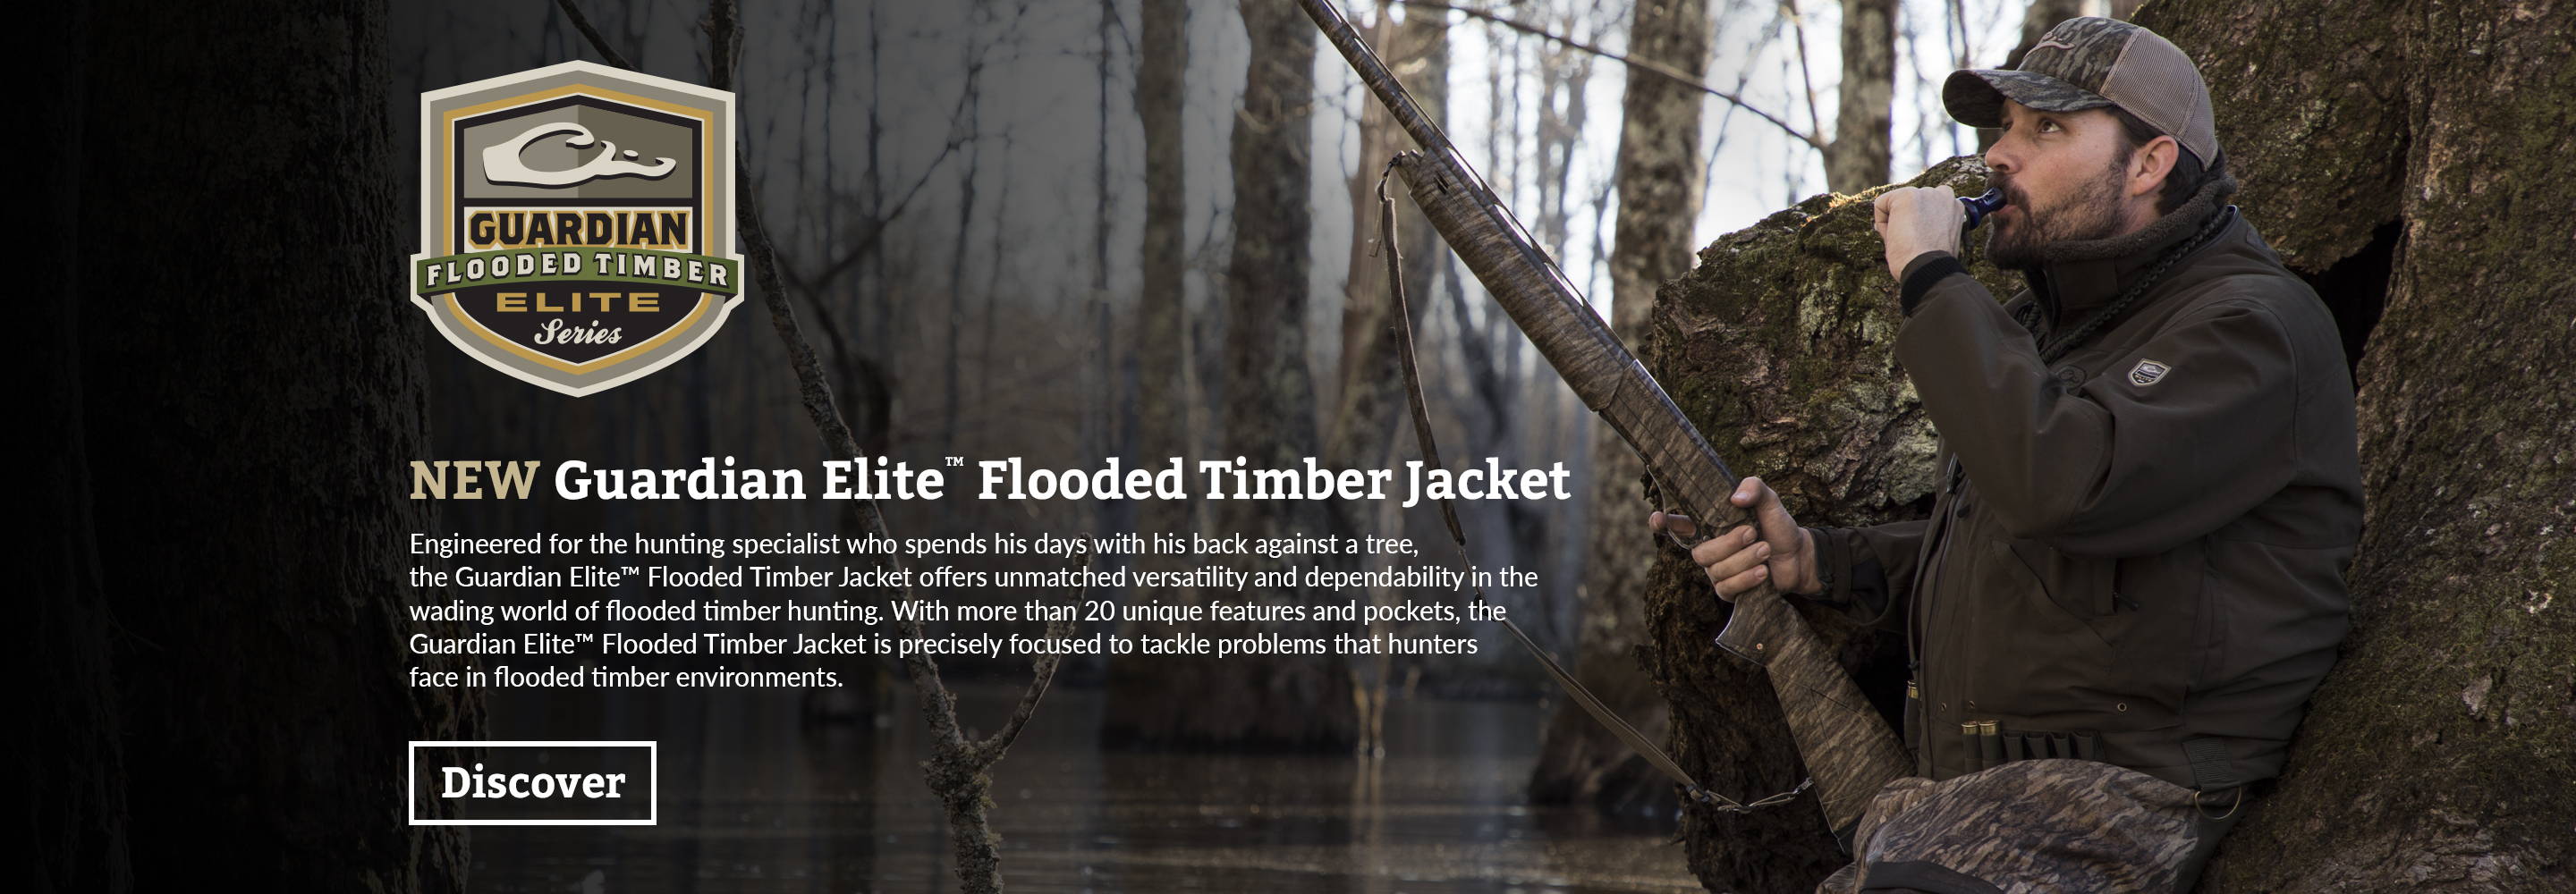 drake guardian elite flooded timber jacket